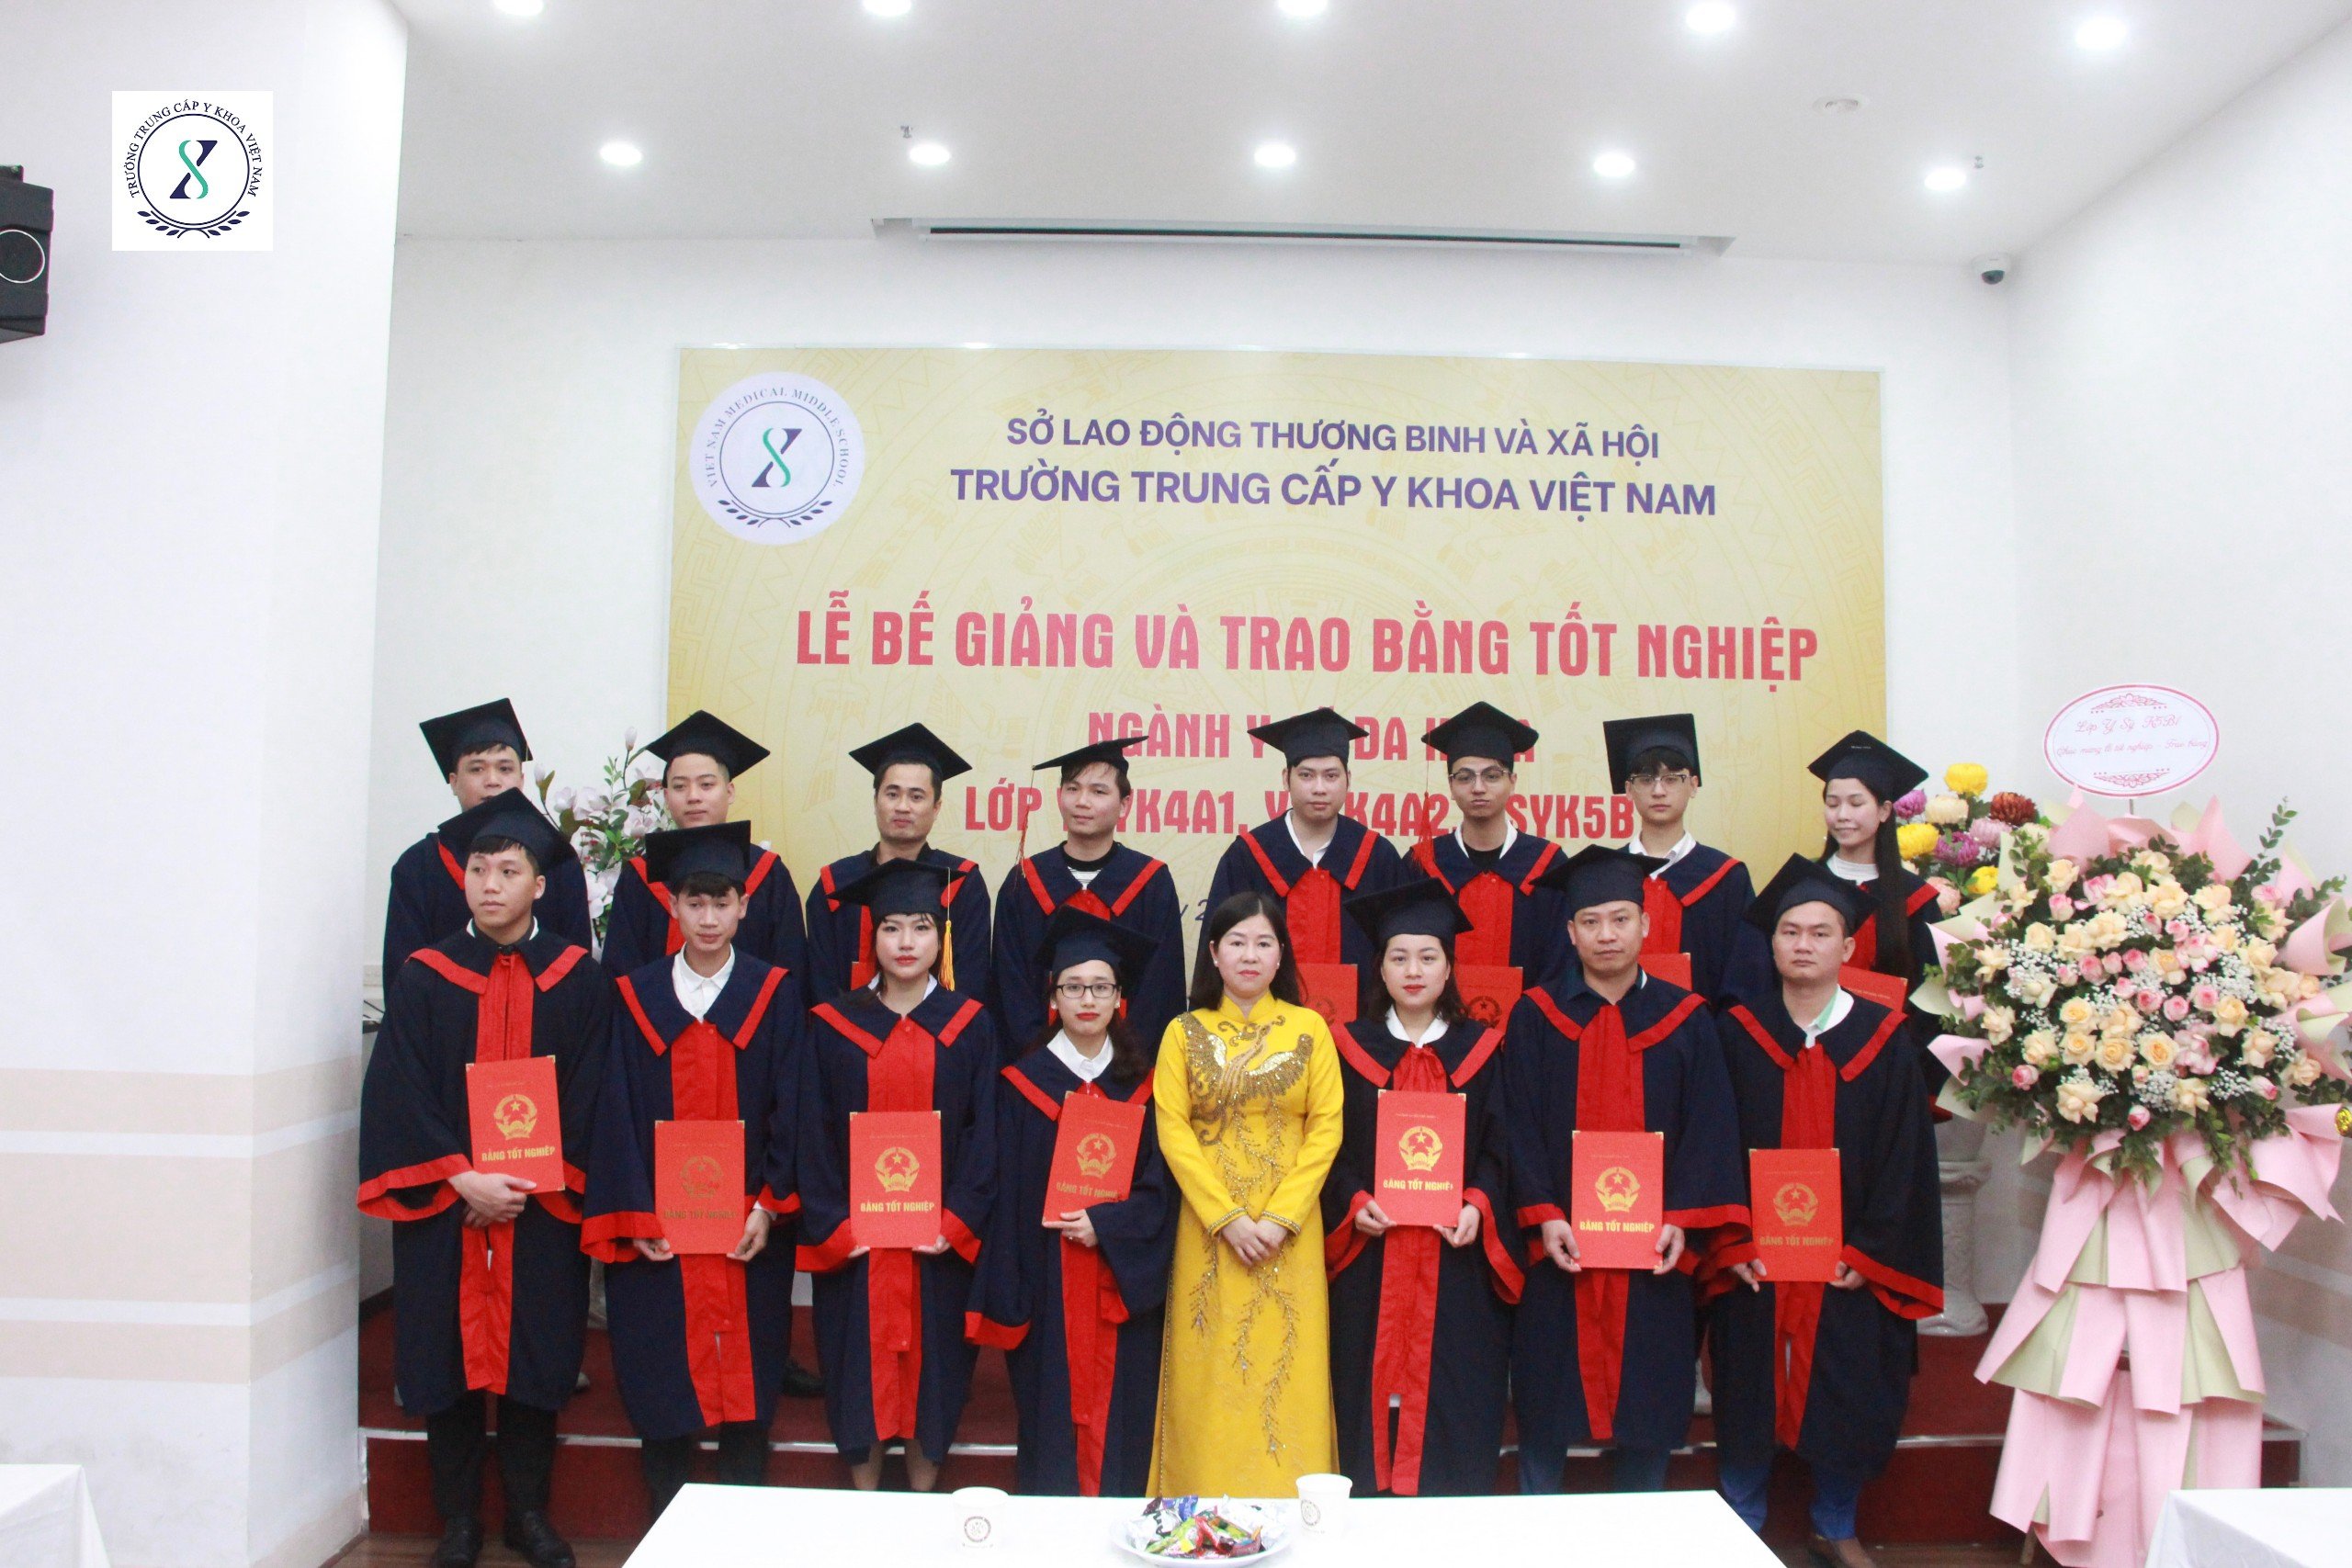 Trường Trung cấp Y khoa Việt Nam tổ chức lễ bế giảng và trao bằng tốt nghiệp sinh viên ngành Y sỹ